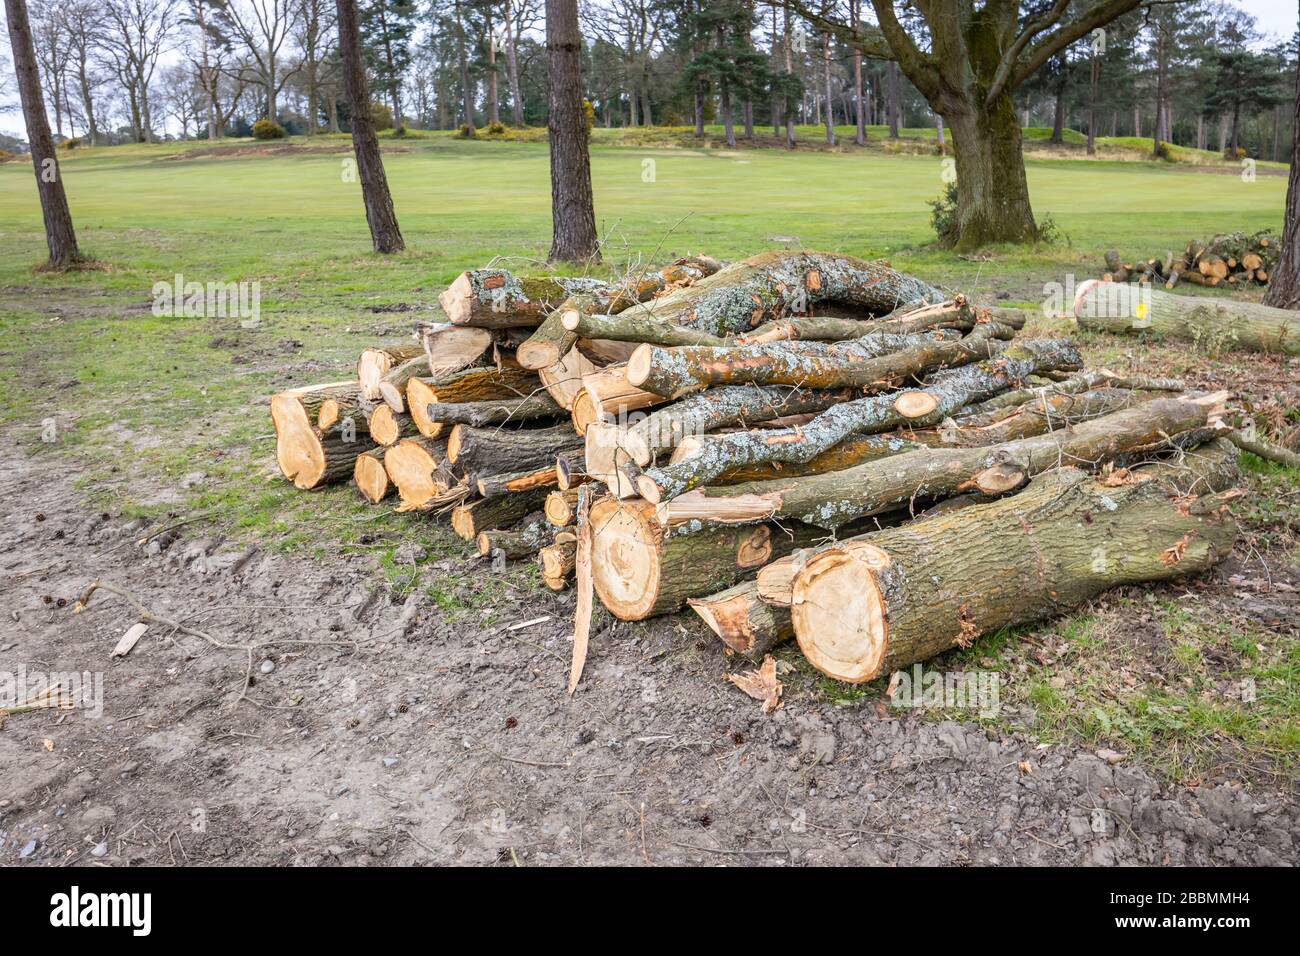 Tas de troncs de pins de pin sciés fraîchement coupés empilés pendant les opérations d'abattage et de déstockage des arbres, Surrey, sud-est de l'Angleterre Banque D'Images